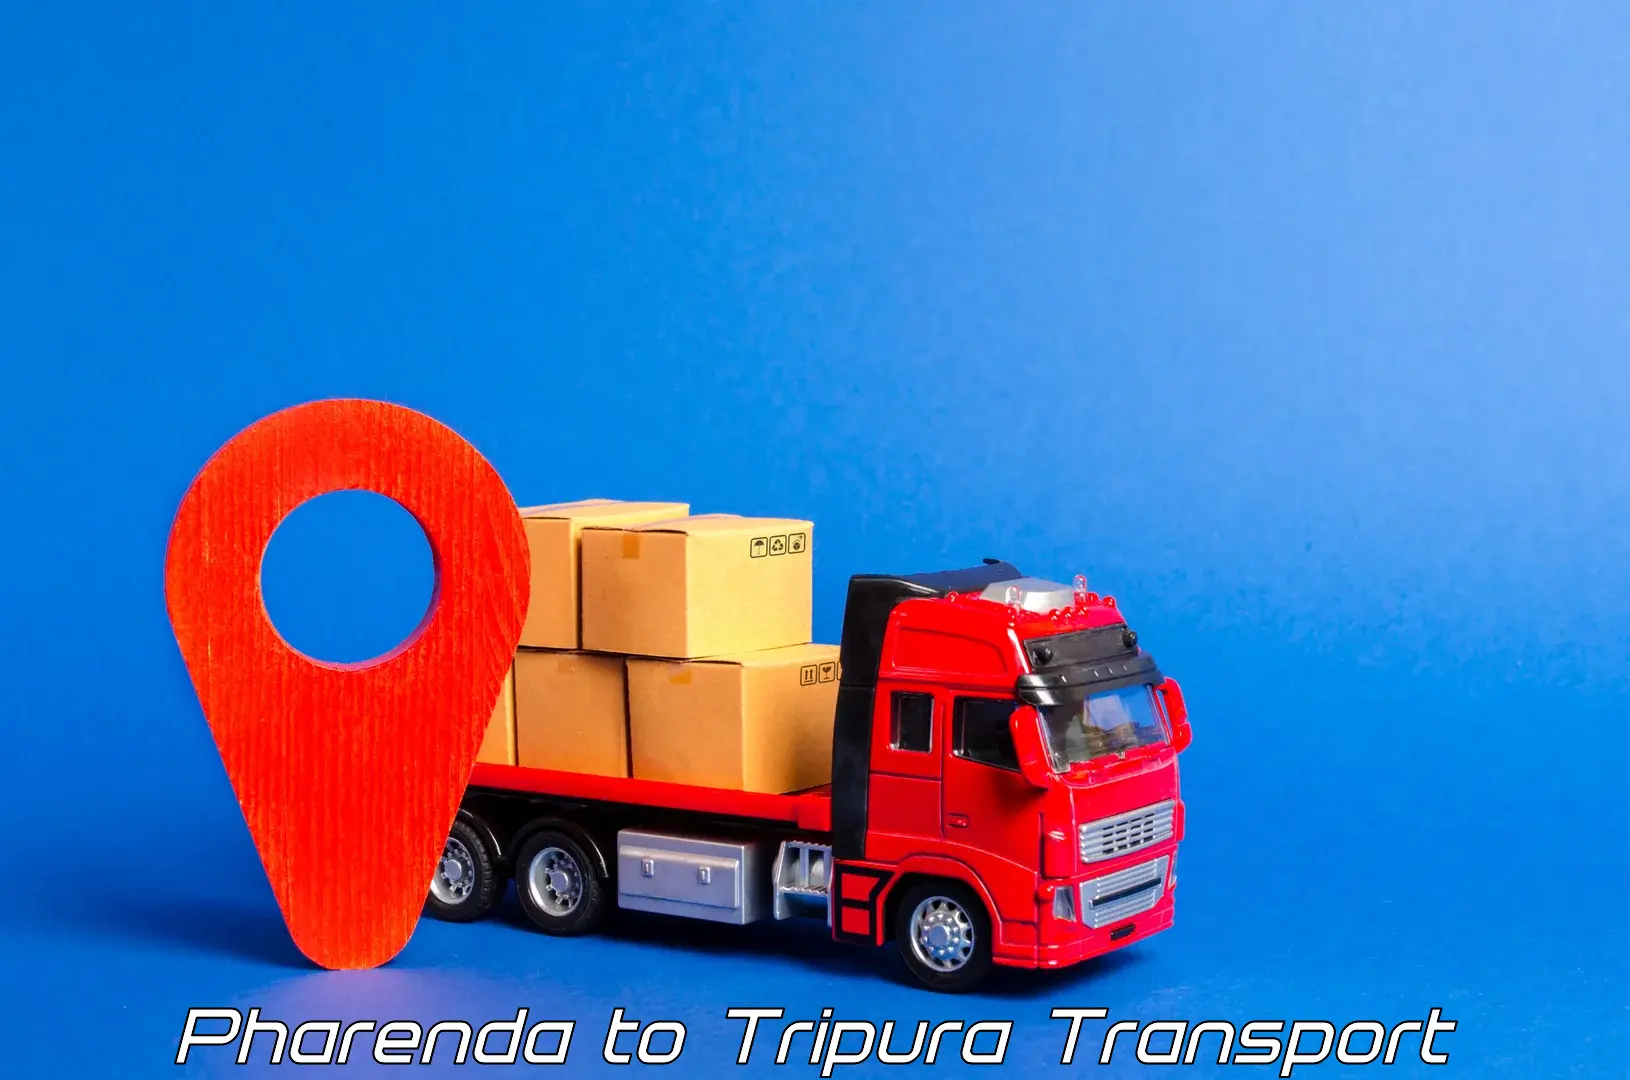 Intercity transport Pharenda to Tripura